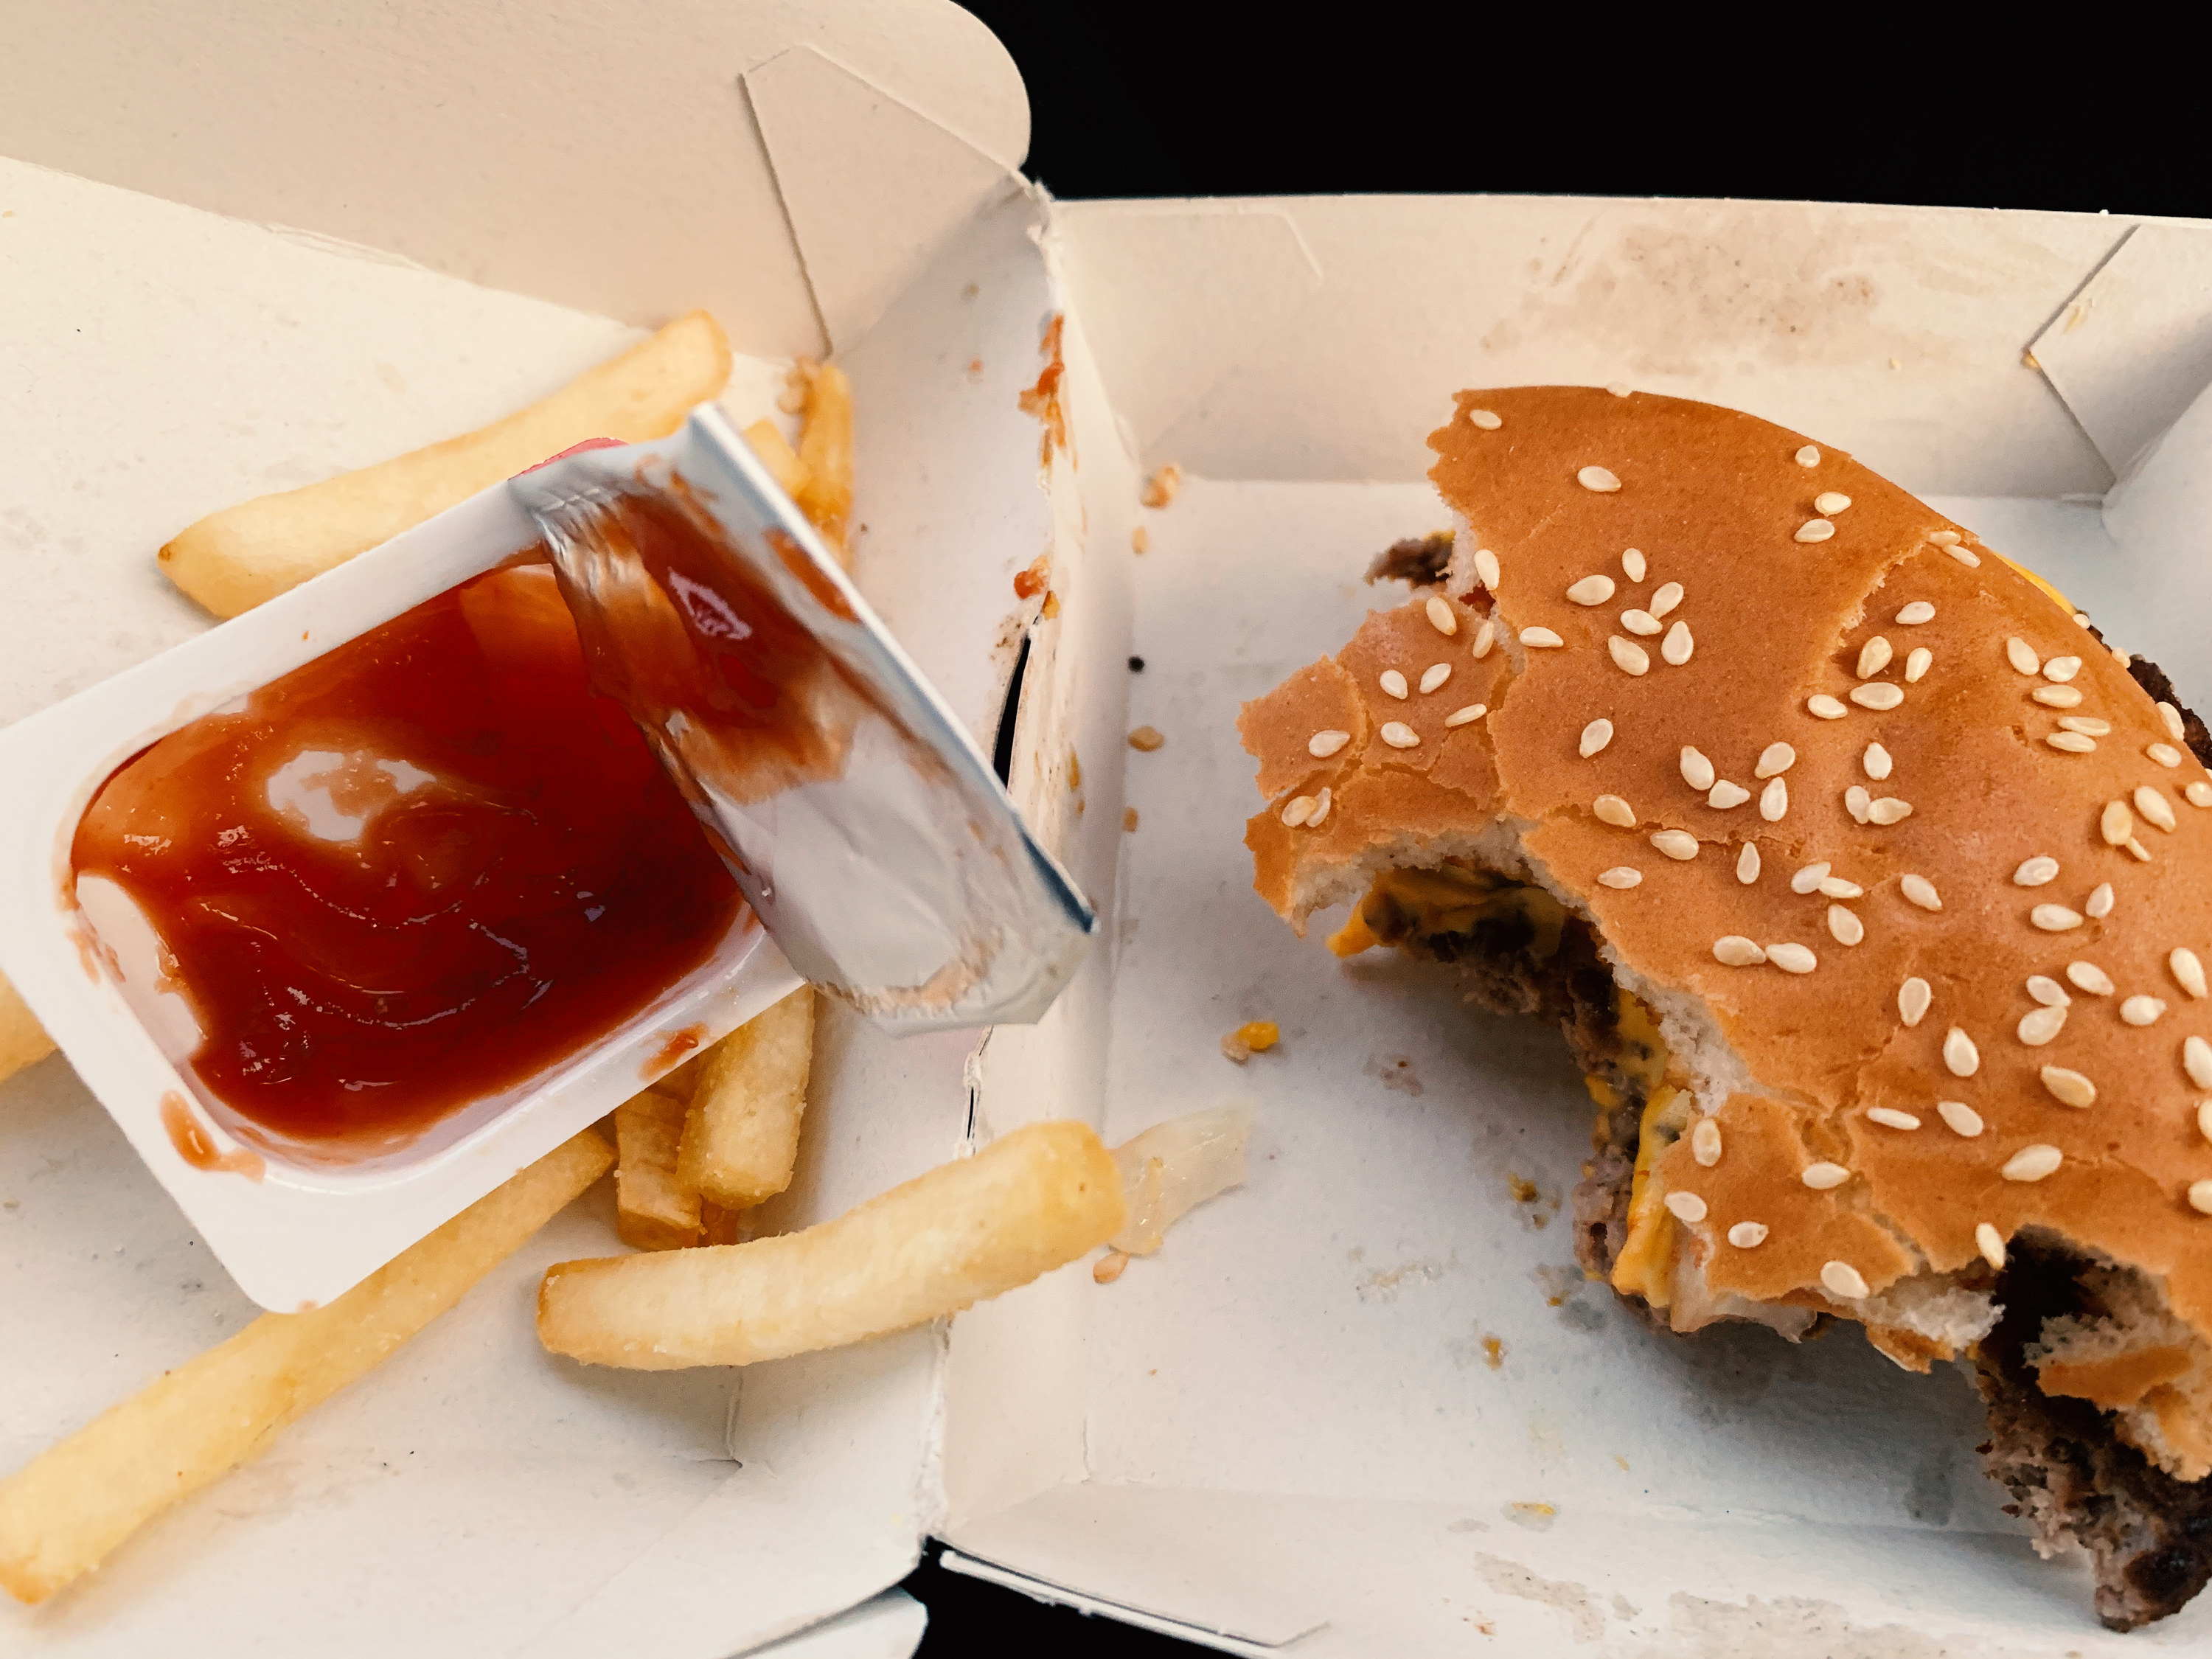 a small ketchup container next to a hamburger